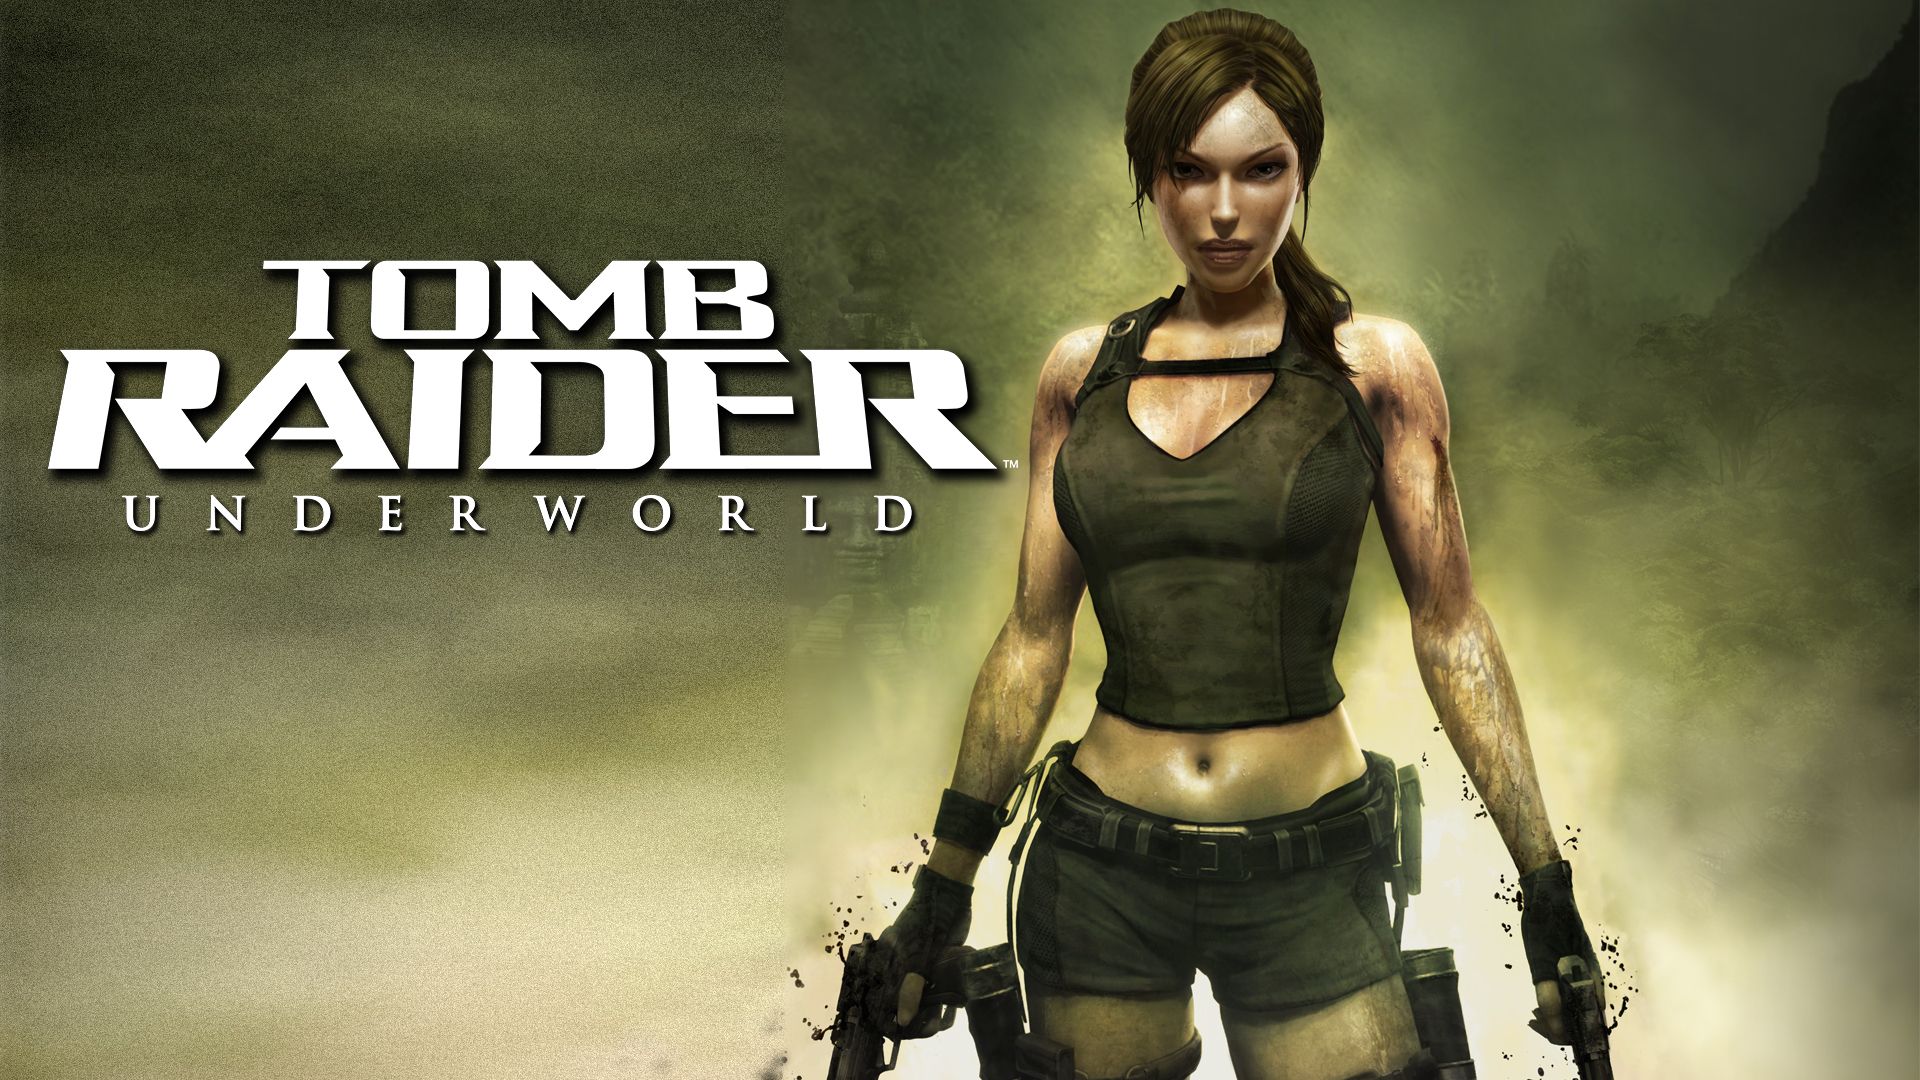 Прохождение игры Tomb Raider: Underworld # 5. HD - Full 1080p. (Русская версия игры)